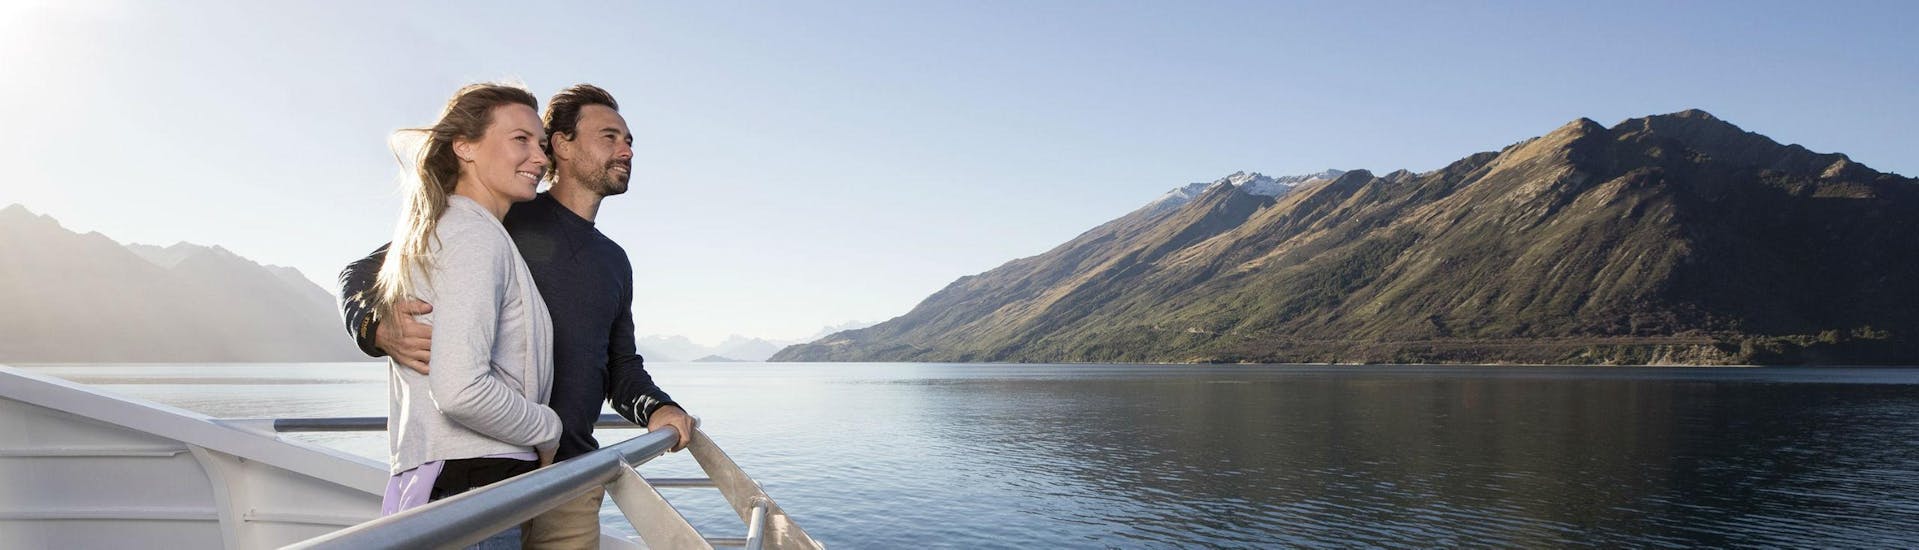 Gita in barca a Lake Wakatipu con osservazione della fauna selvatica.